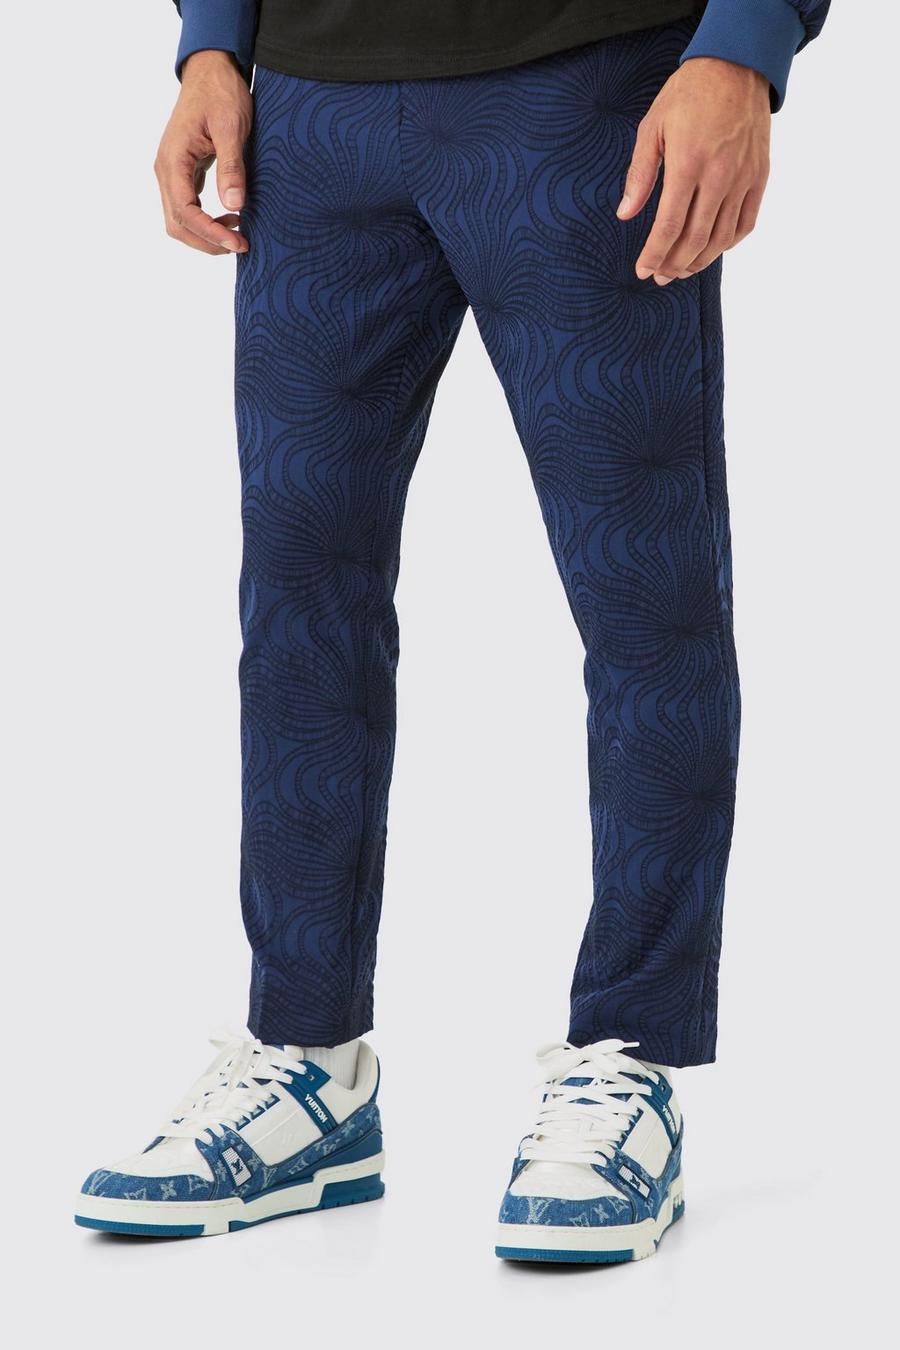 Pantalón ajustado texturizado entallado con alforza, Navy